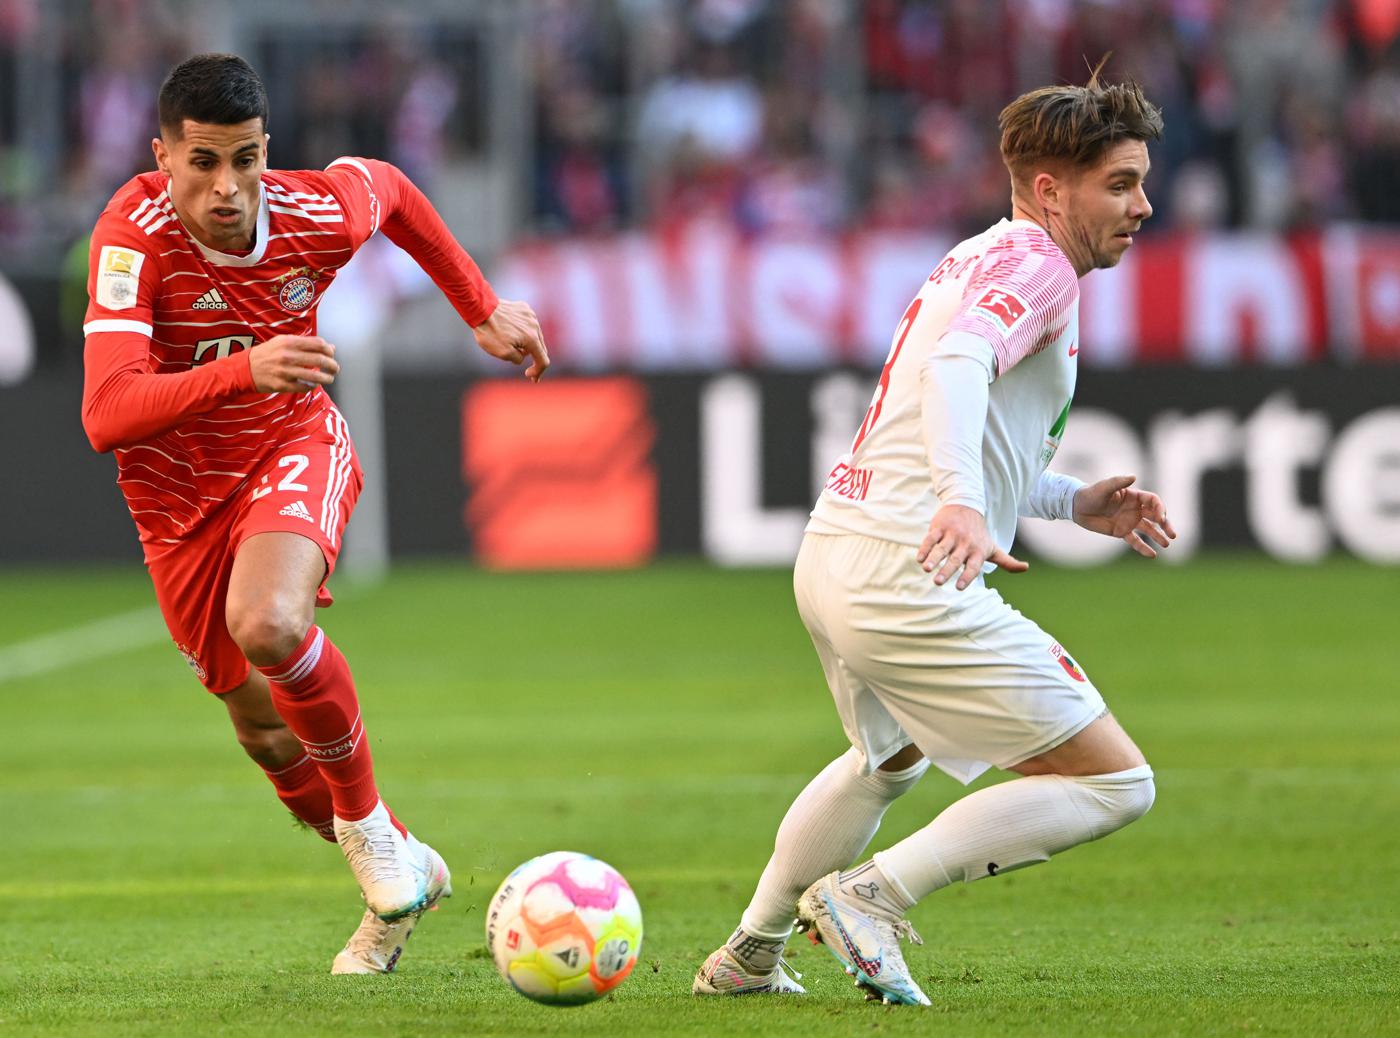 Bayern v Augsburg - 5-3. Mistrzostwo Niemiec, runda 24. Przegląd meczu, statystyki.